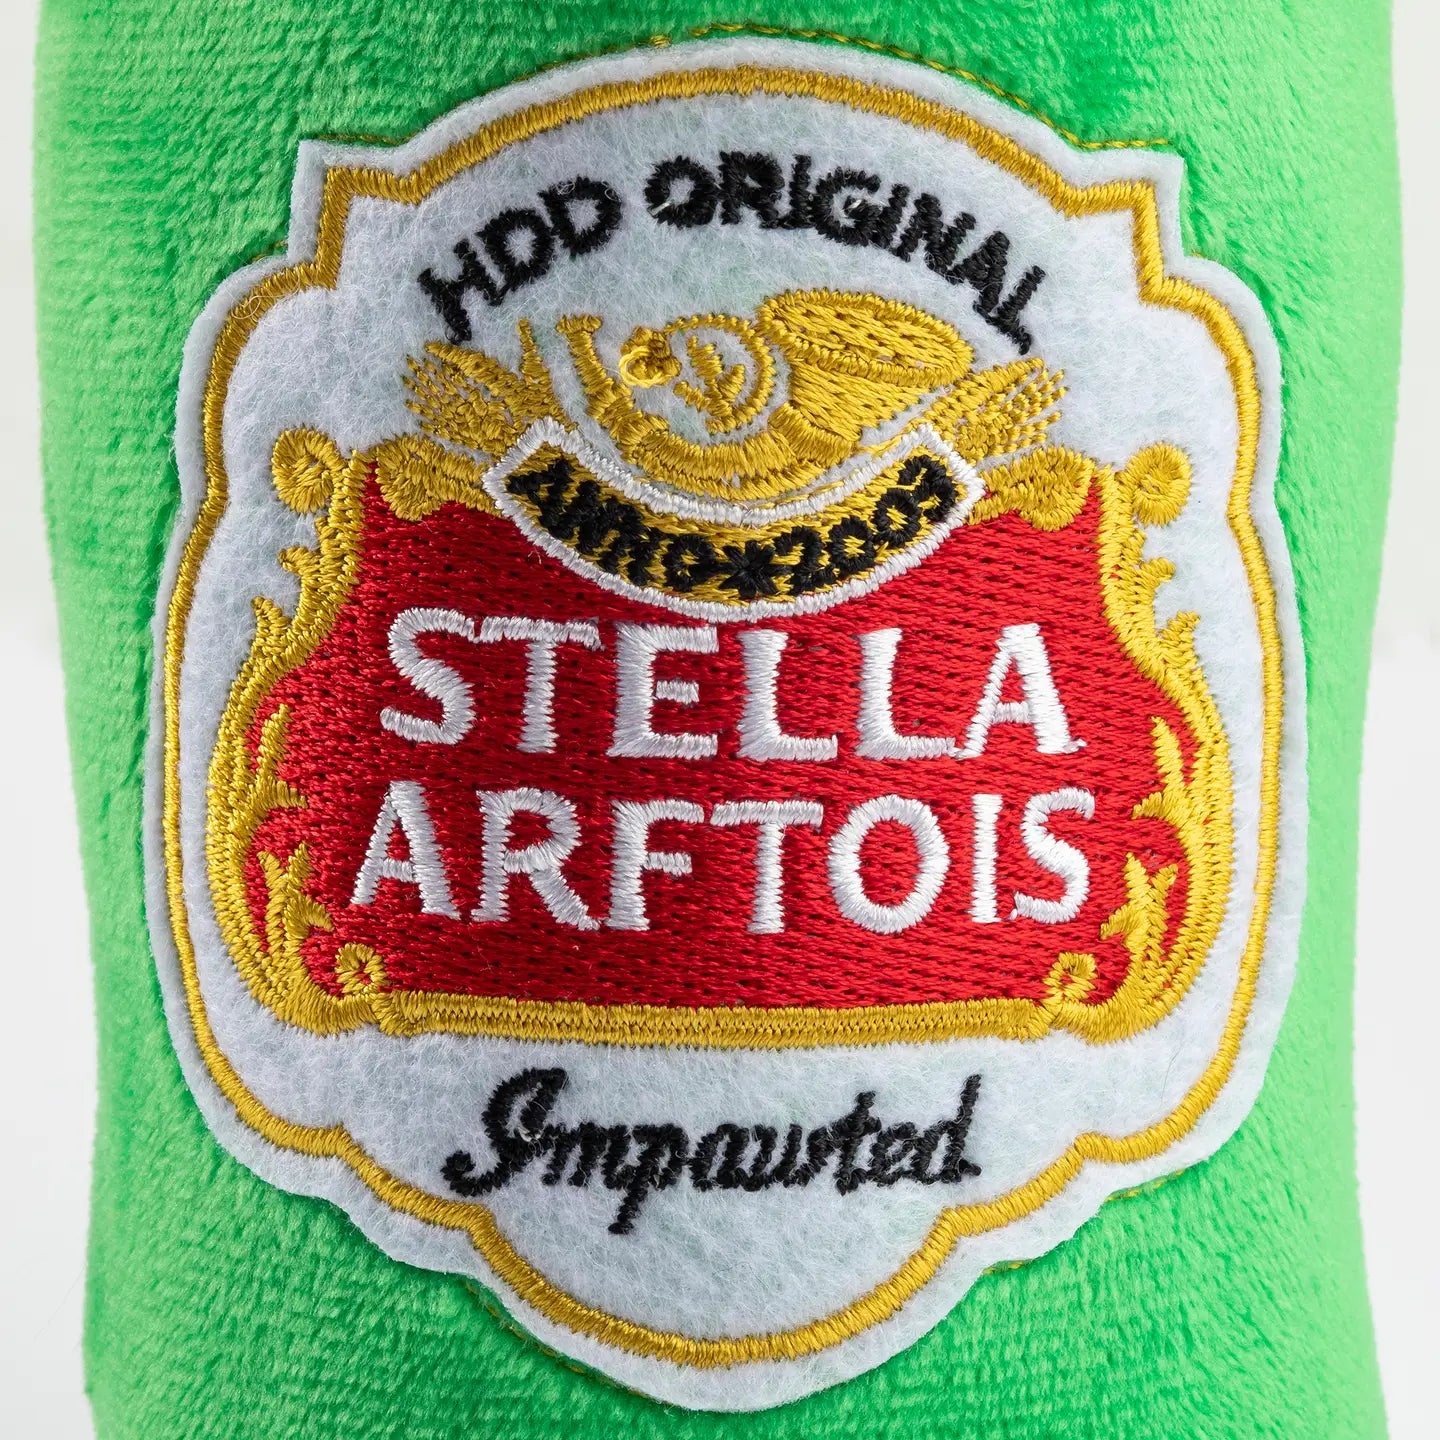 Stella Arftois Beer - Dog Toy